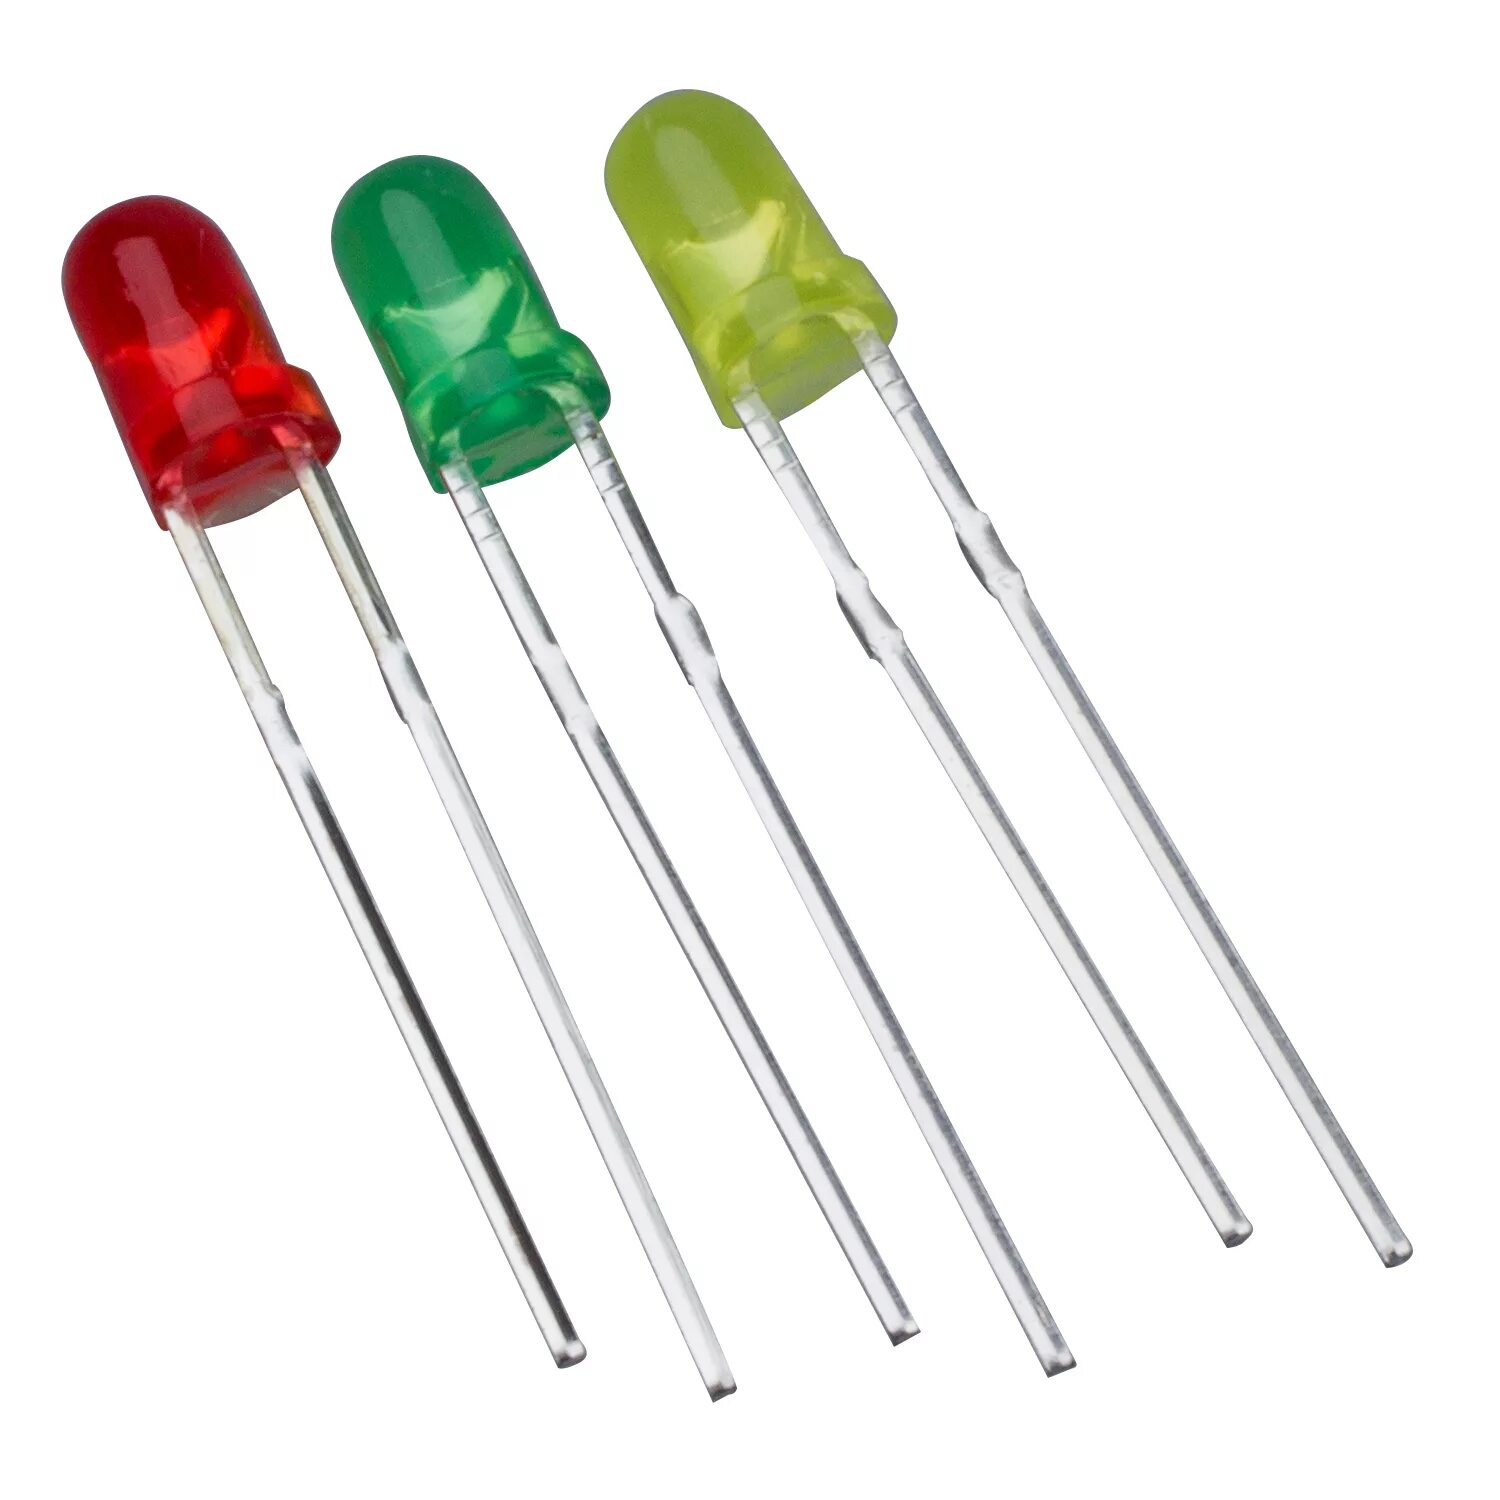 Светодиоды 1 мм. Светодиод красный 5 мм 1.5 вольта. GNL-3012hd, светодиод красный 60° d=3мм 5-10мкд 700нм (Red). Светодиод GNL-3014et. Светодиод 3mm красный-зеленый.